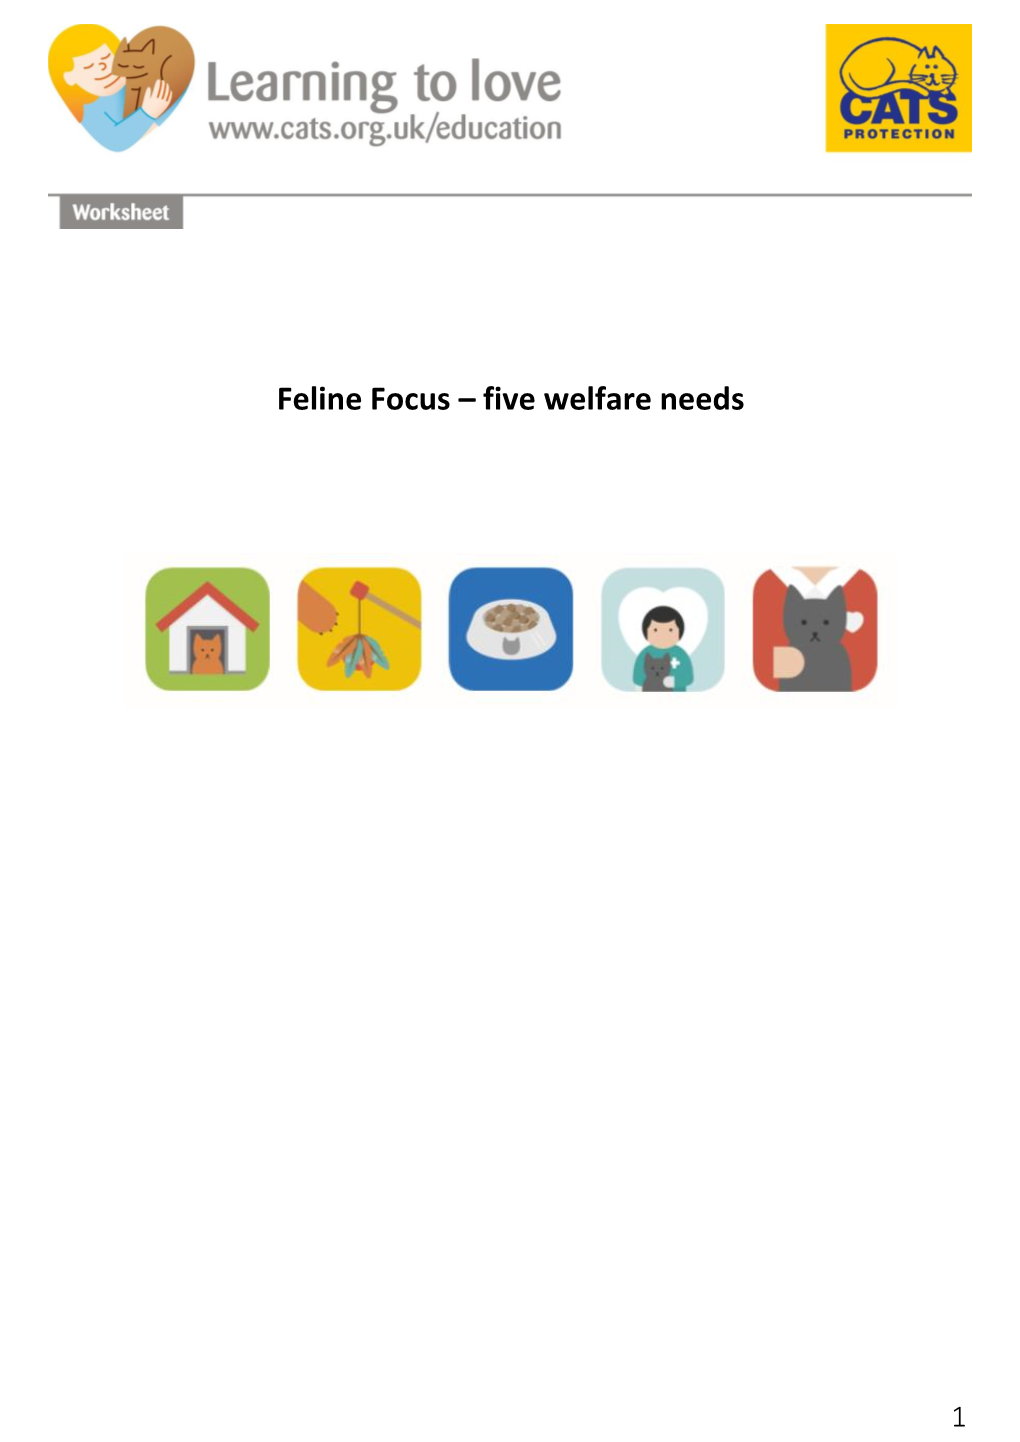 Feline Focus – Five Welfare Needs